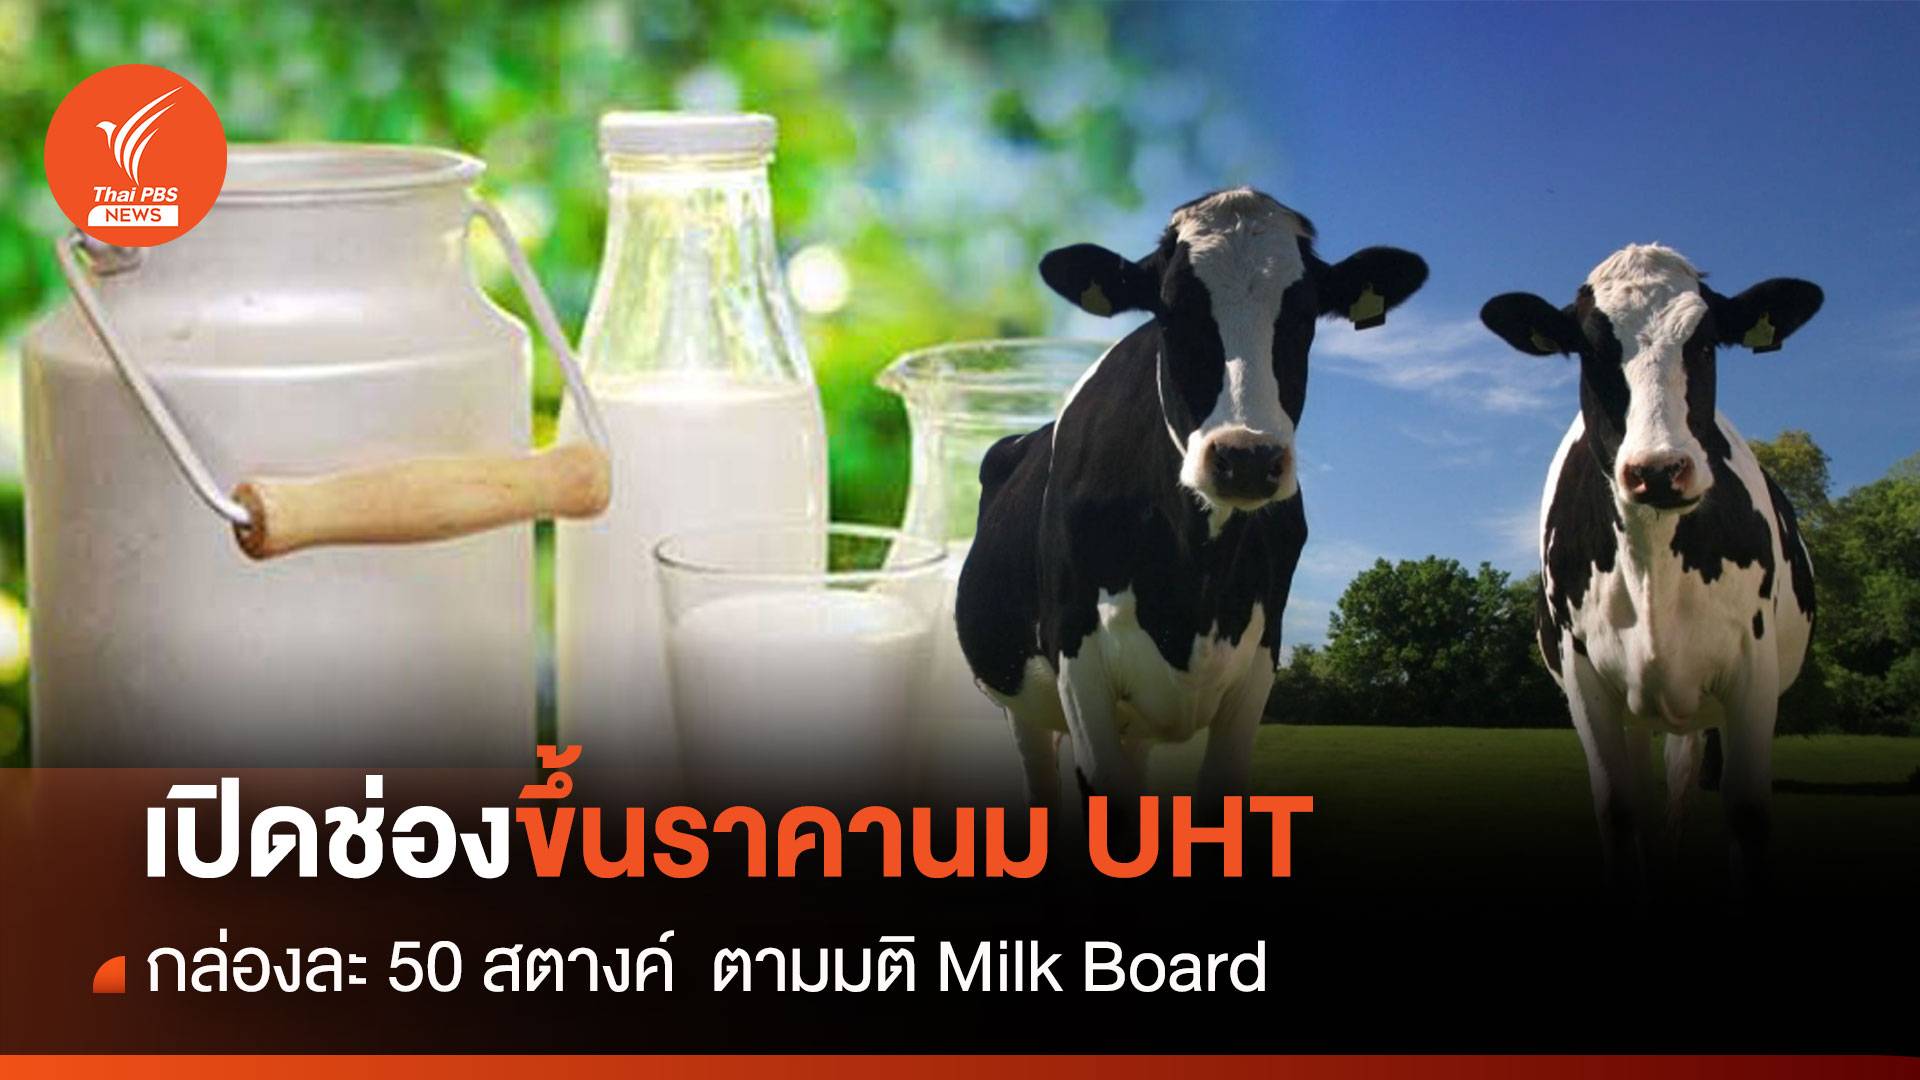 เปิดช่องขึ้นราคานม UHT กล่องละ 50 สตางค์ ตามมติ Milk Board